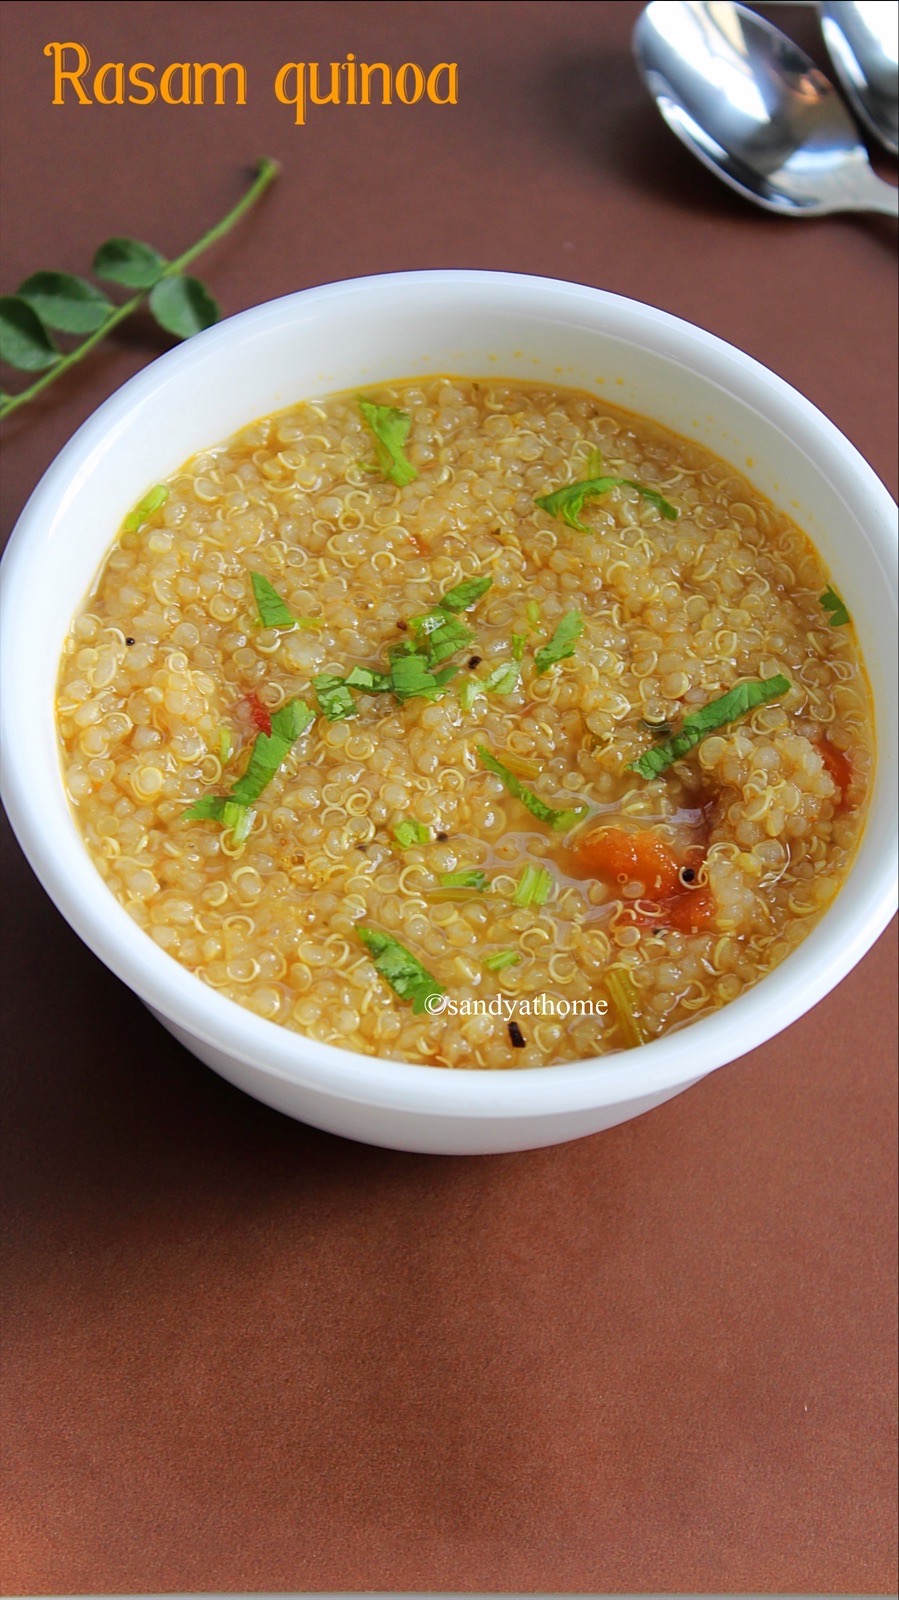 Rasam quinoa recipe, Quinoa recipes - Sandhya's recipes